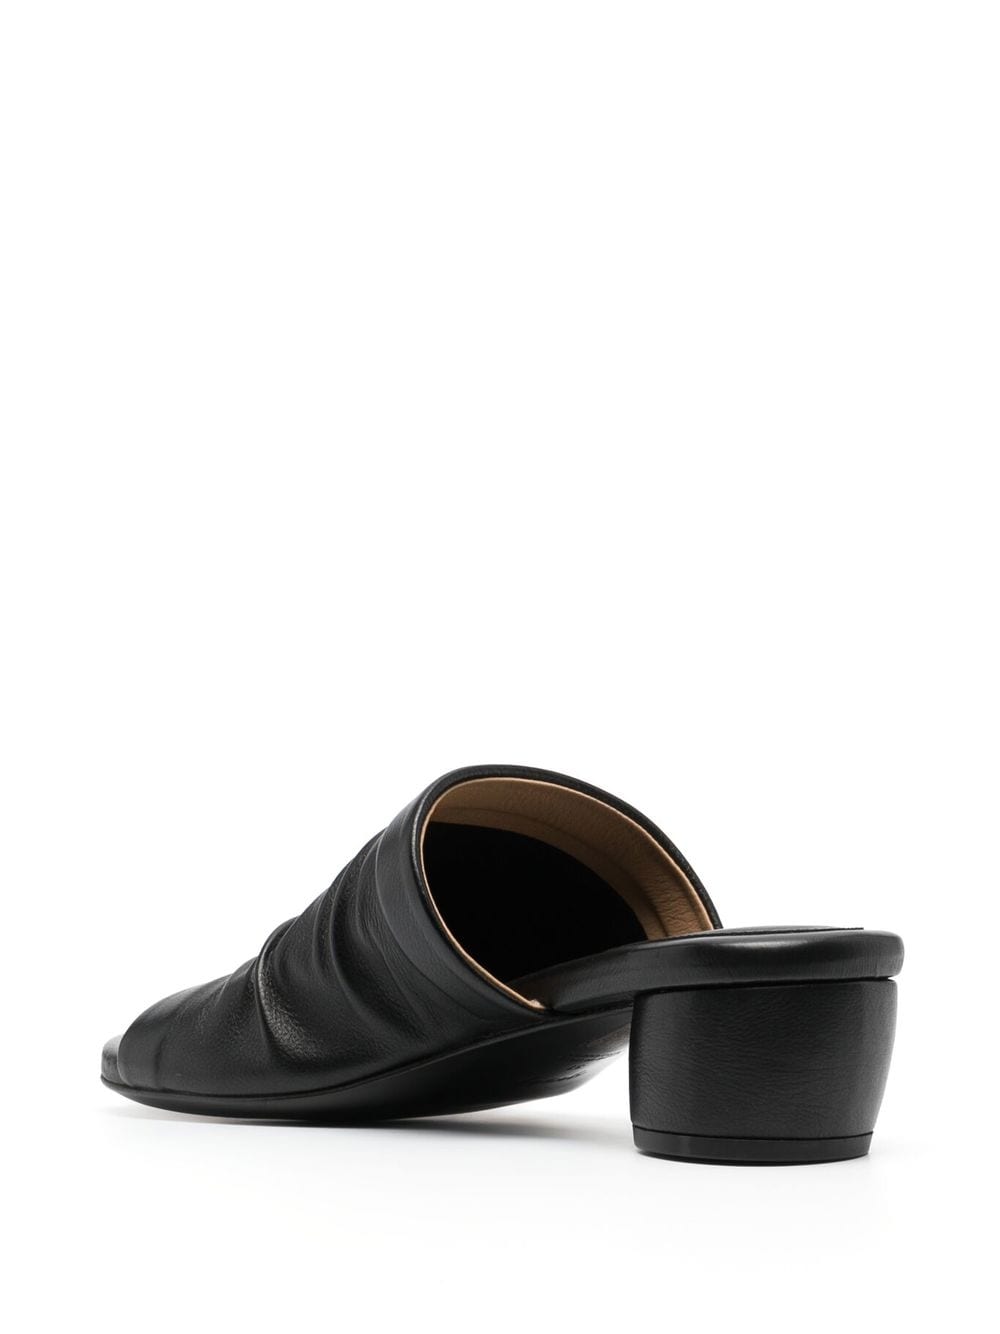 Shop Marsèll Women's Leather Sandals